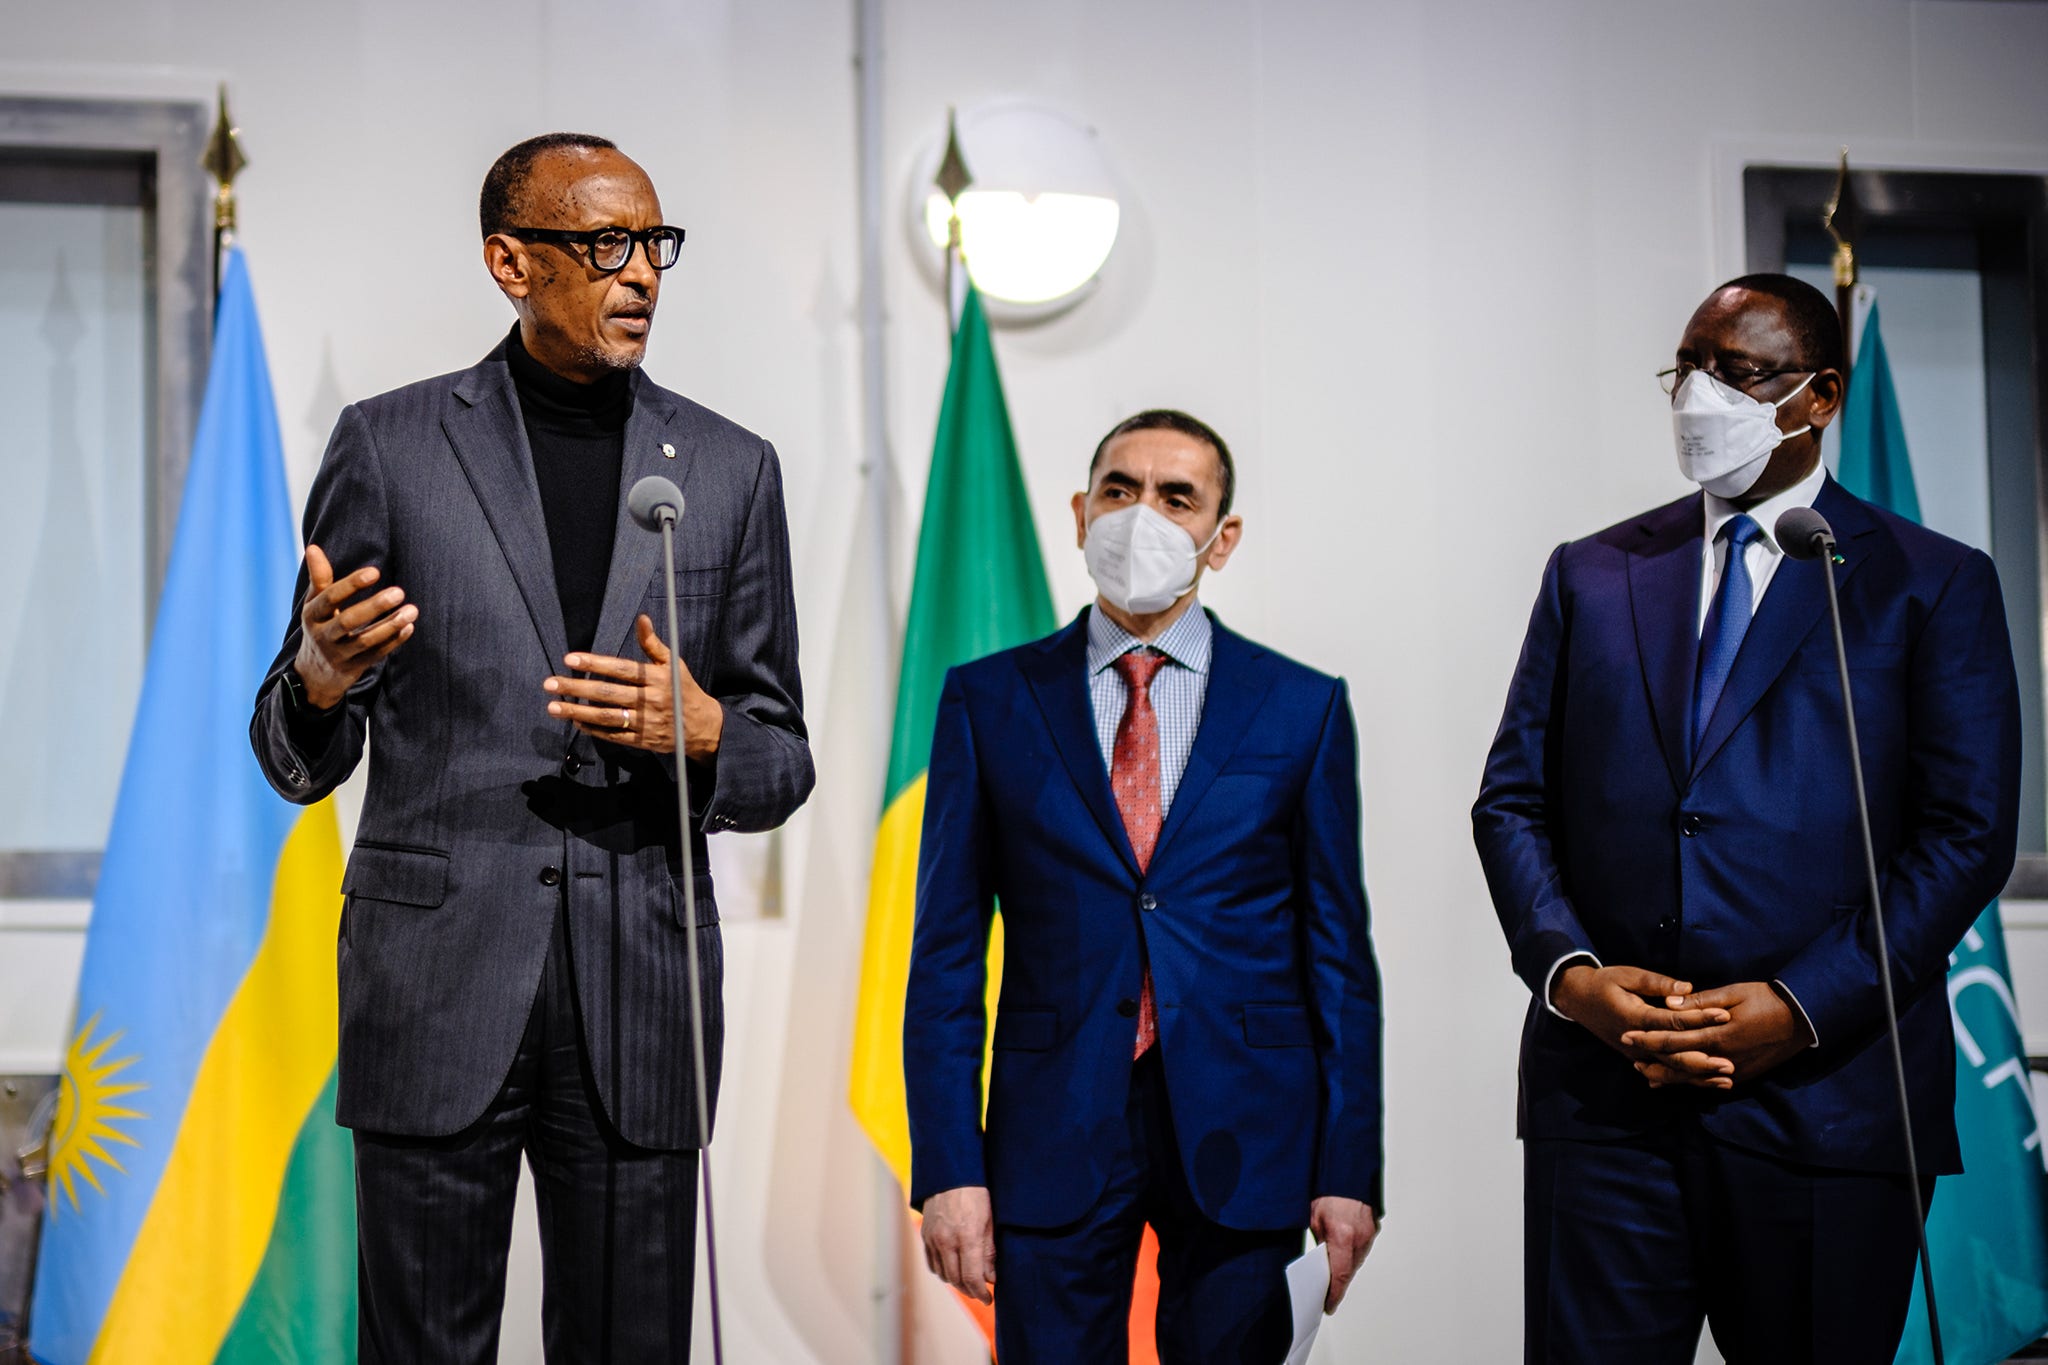 H.E. President Paul Kagame von Rwanda 2